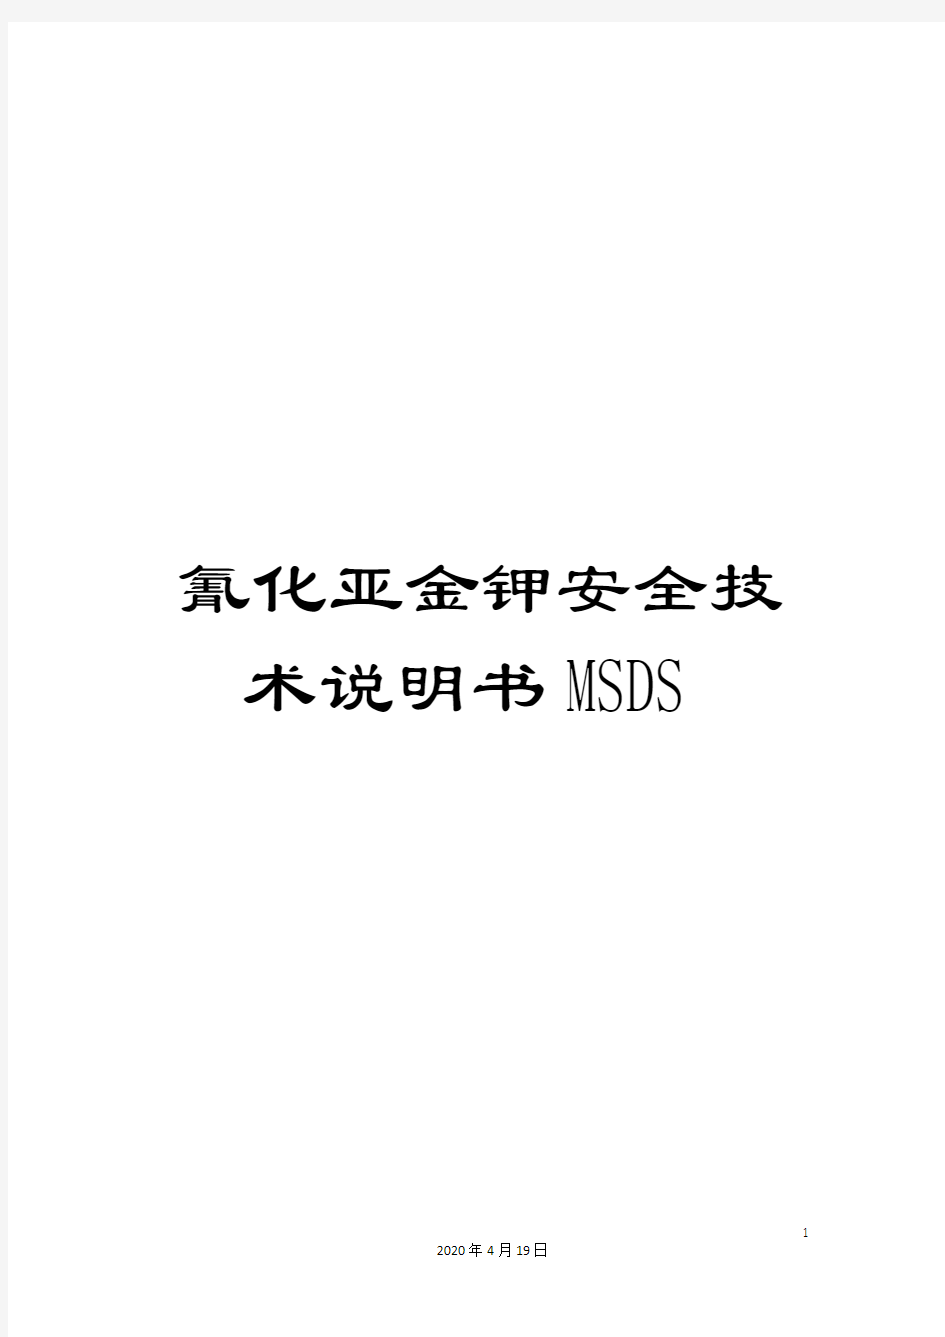 氰化亚金钾安全技术说明书MSDS